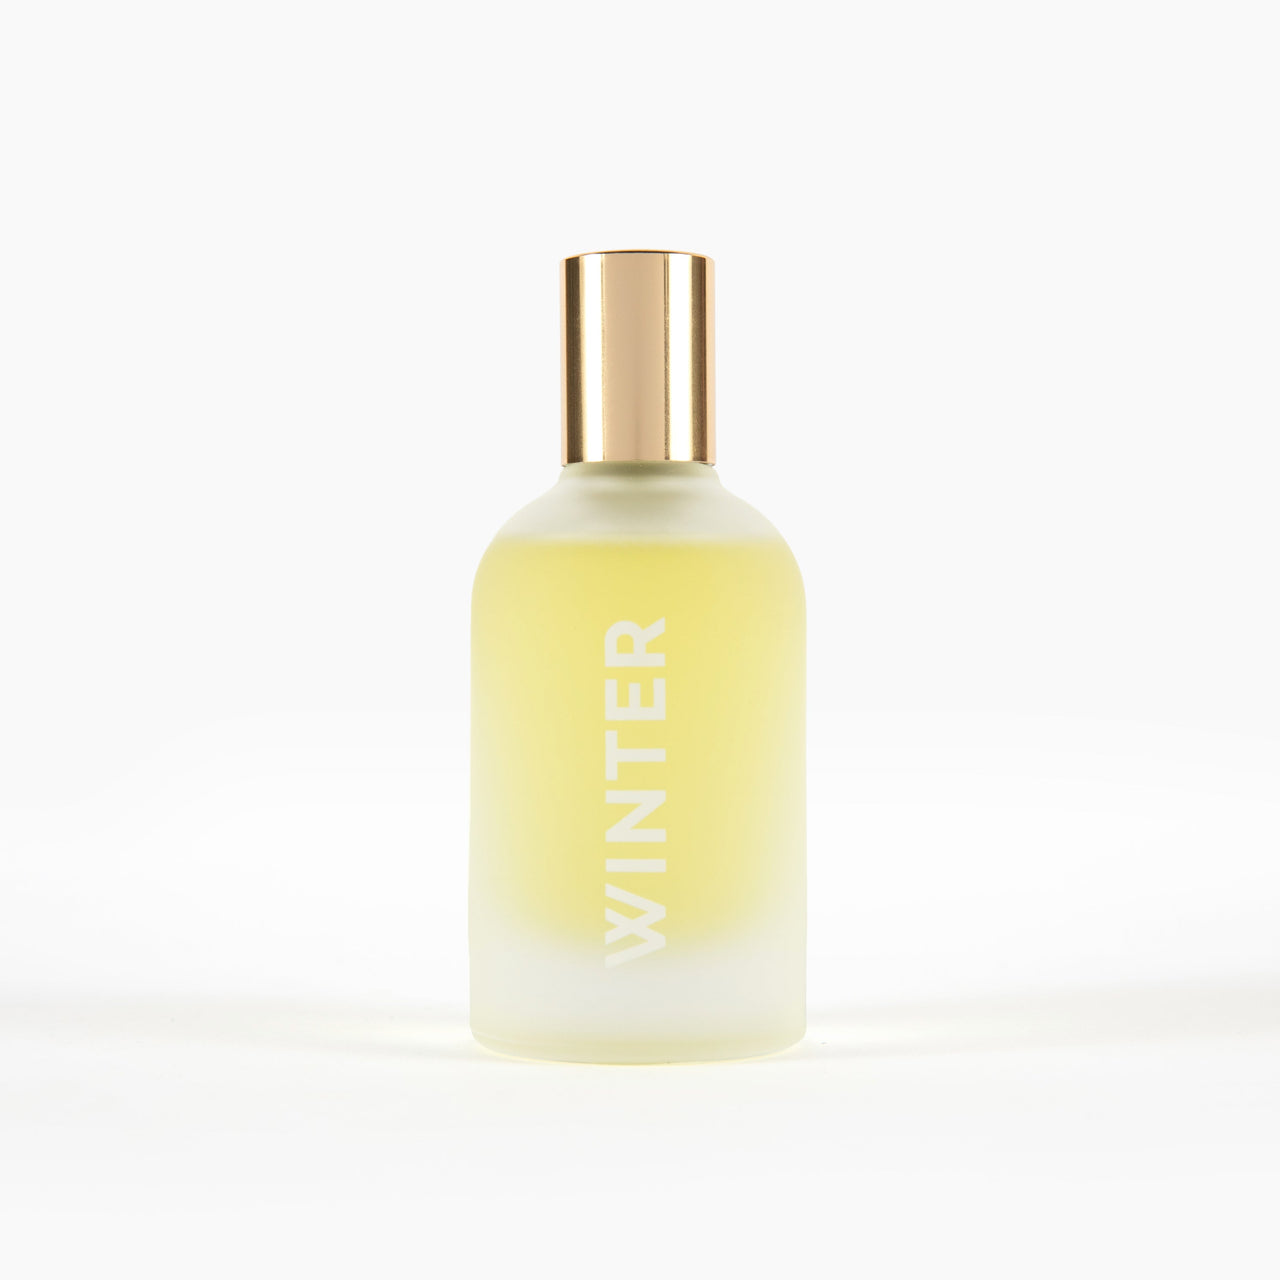 Winter Fragrance